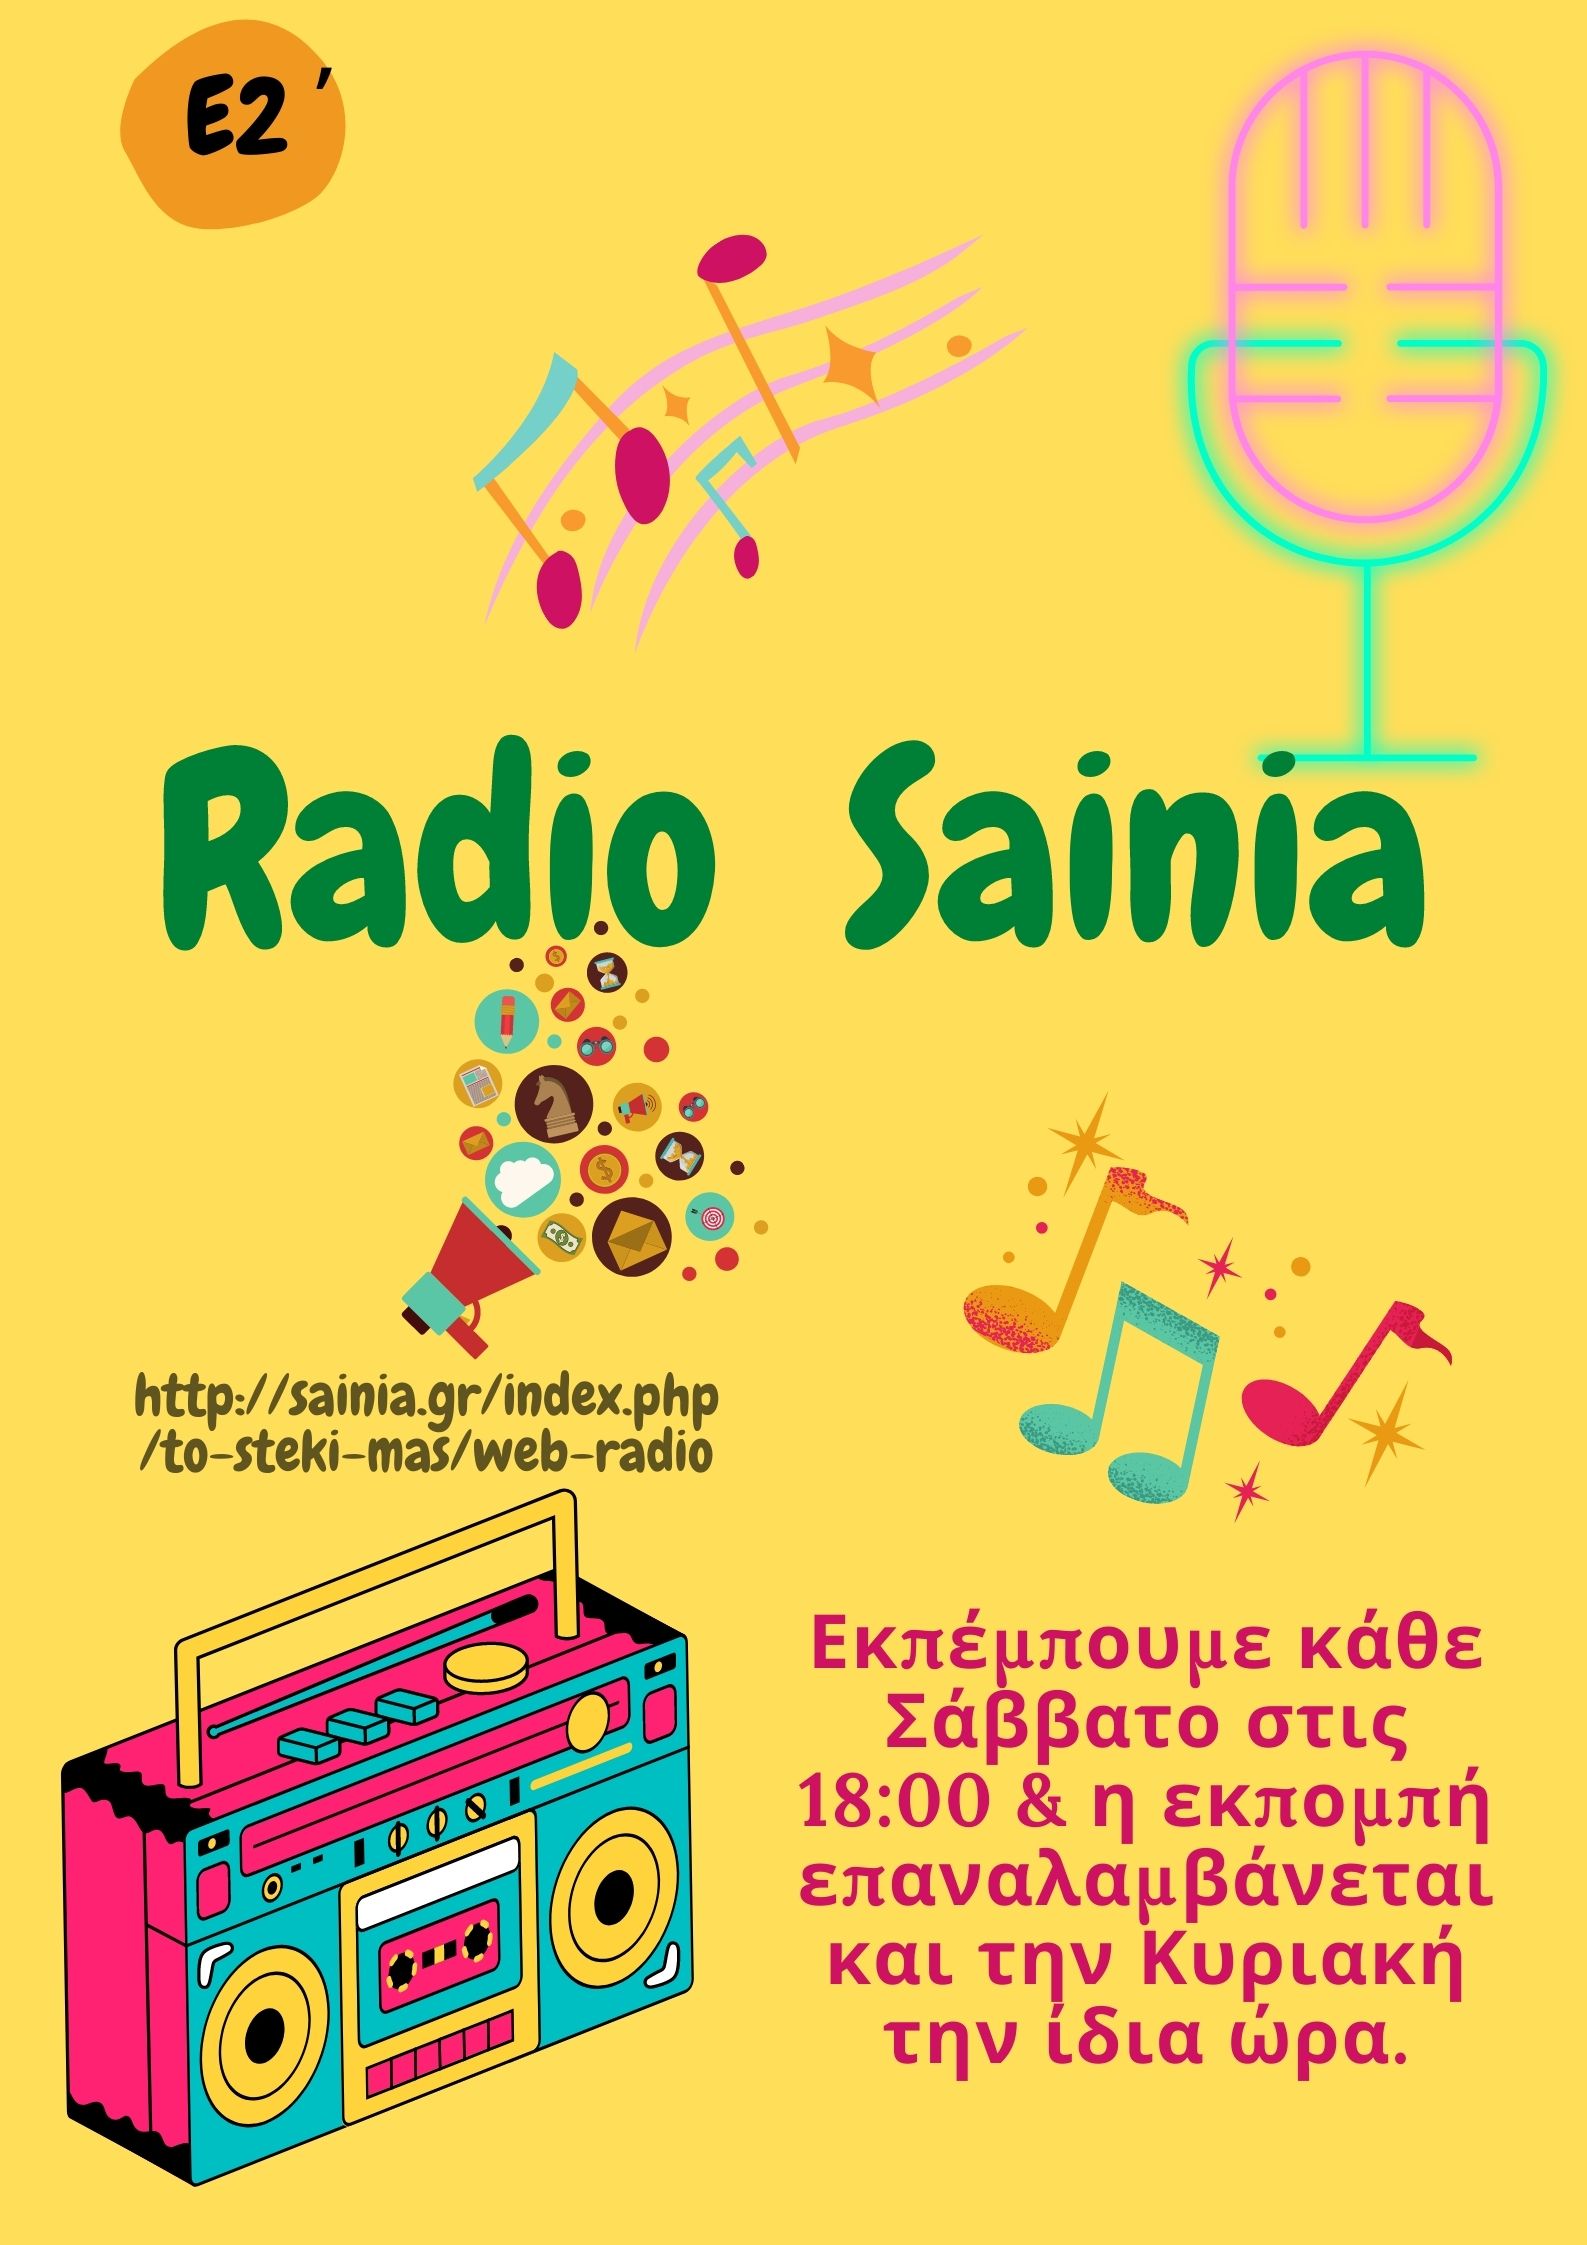 Radio Sainia